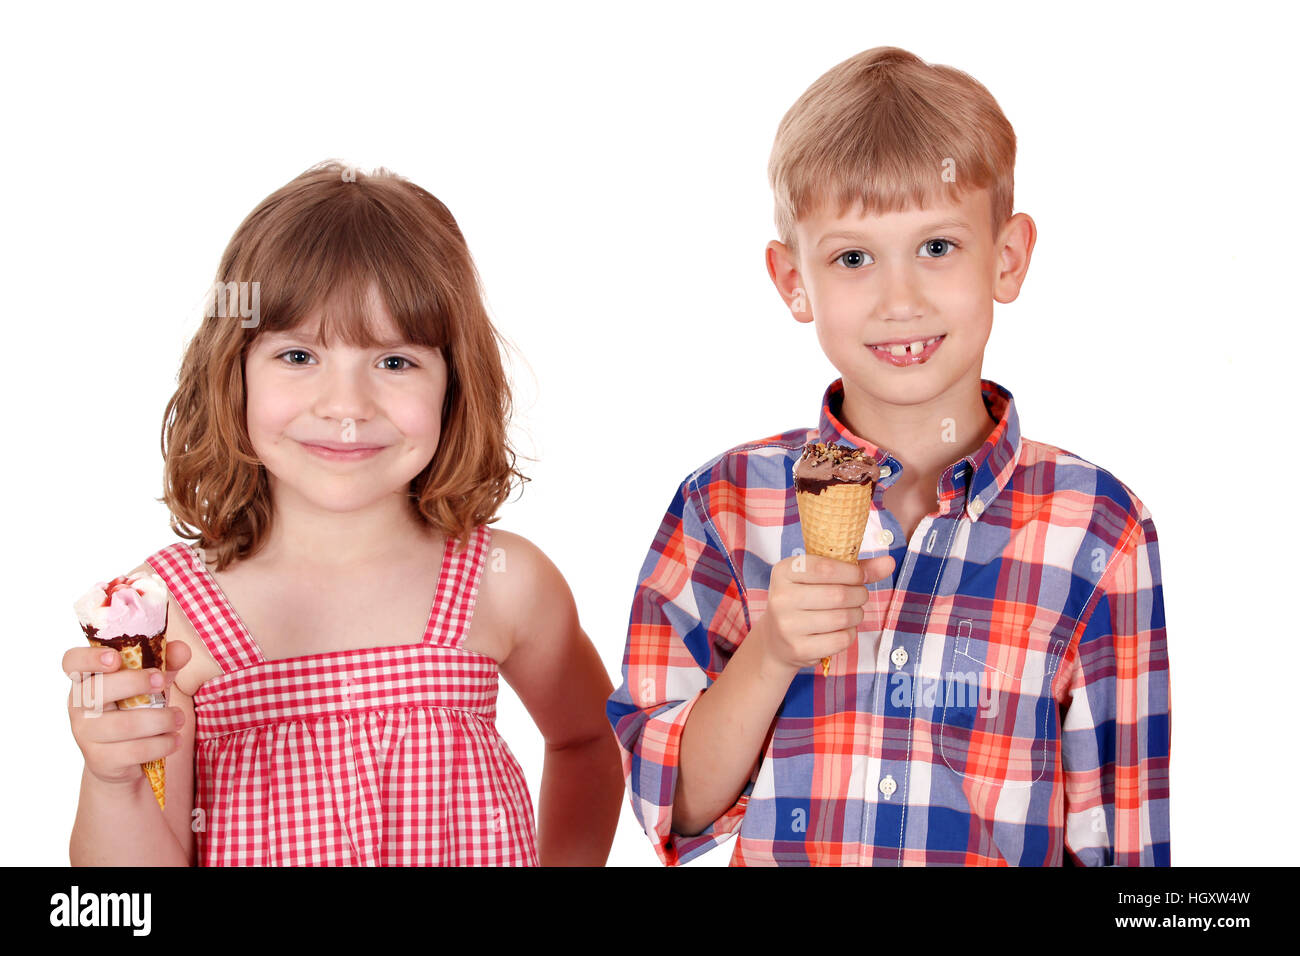 happy children with ice cream Stock Photo